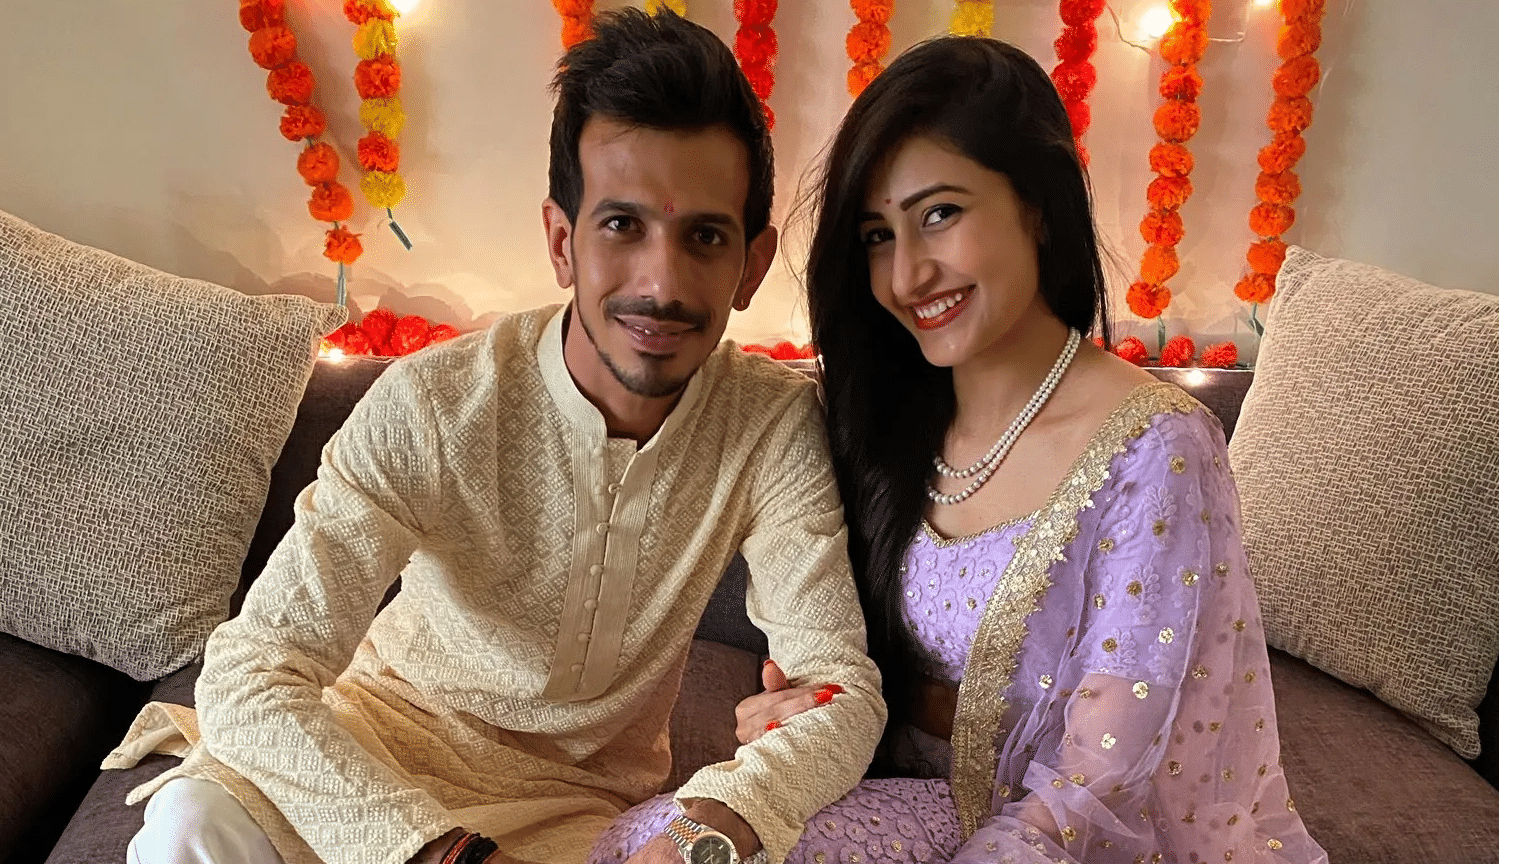 Yuzvendra Chahal’s love for fiance Dhanashree wins hearts on social media